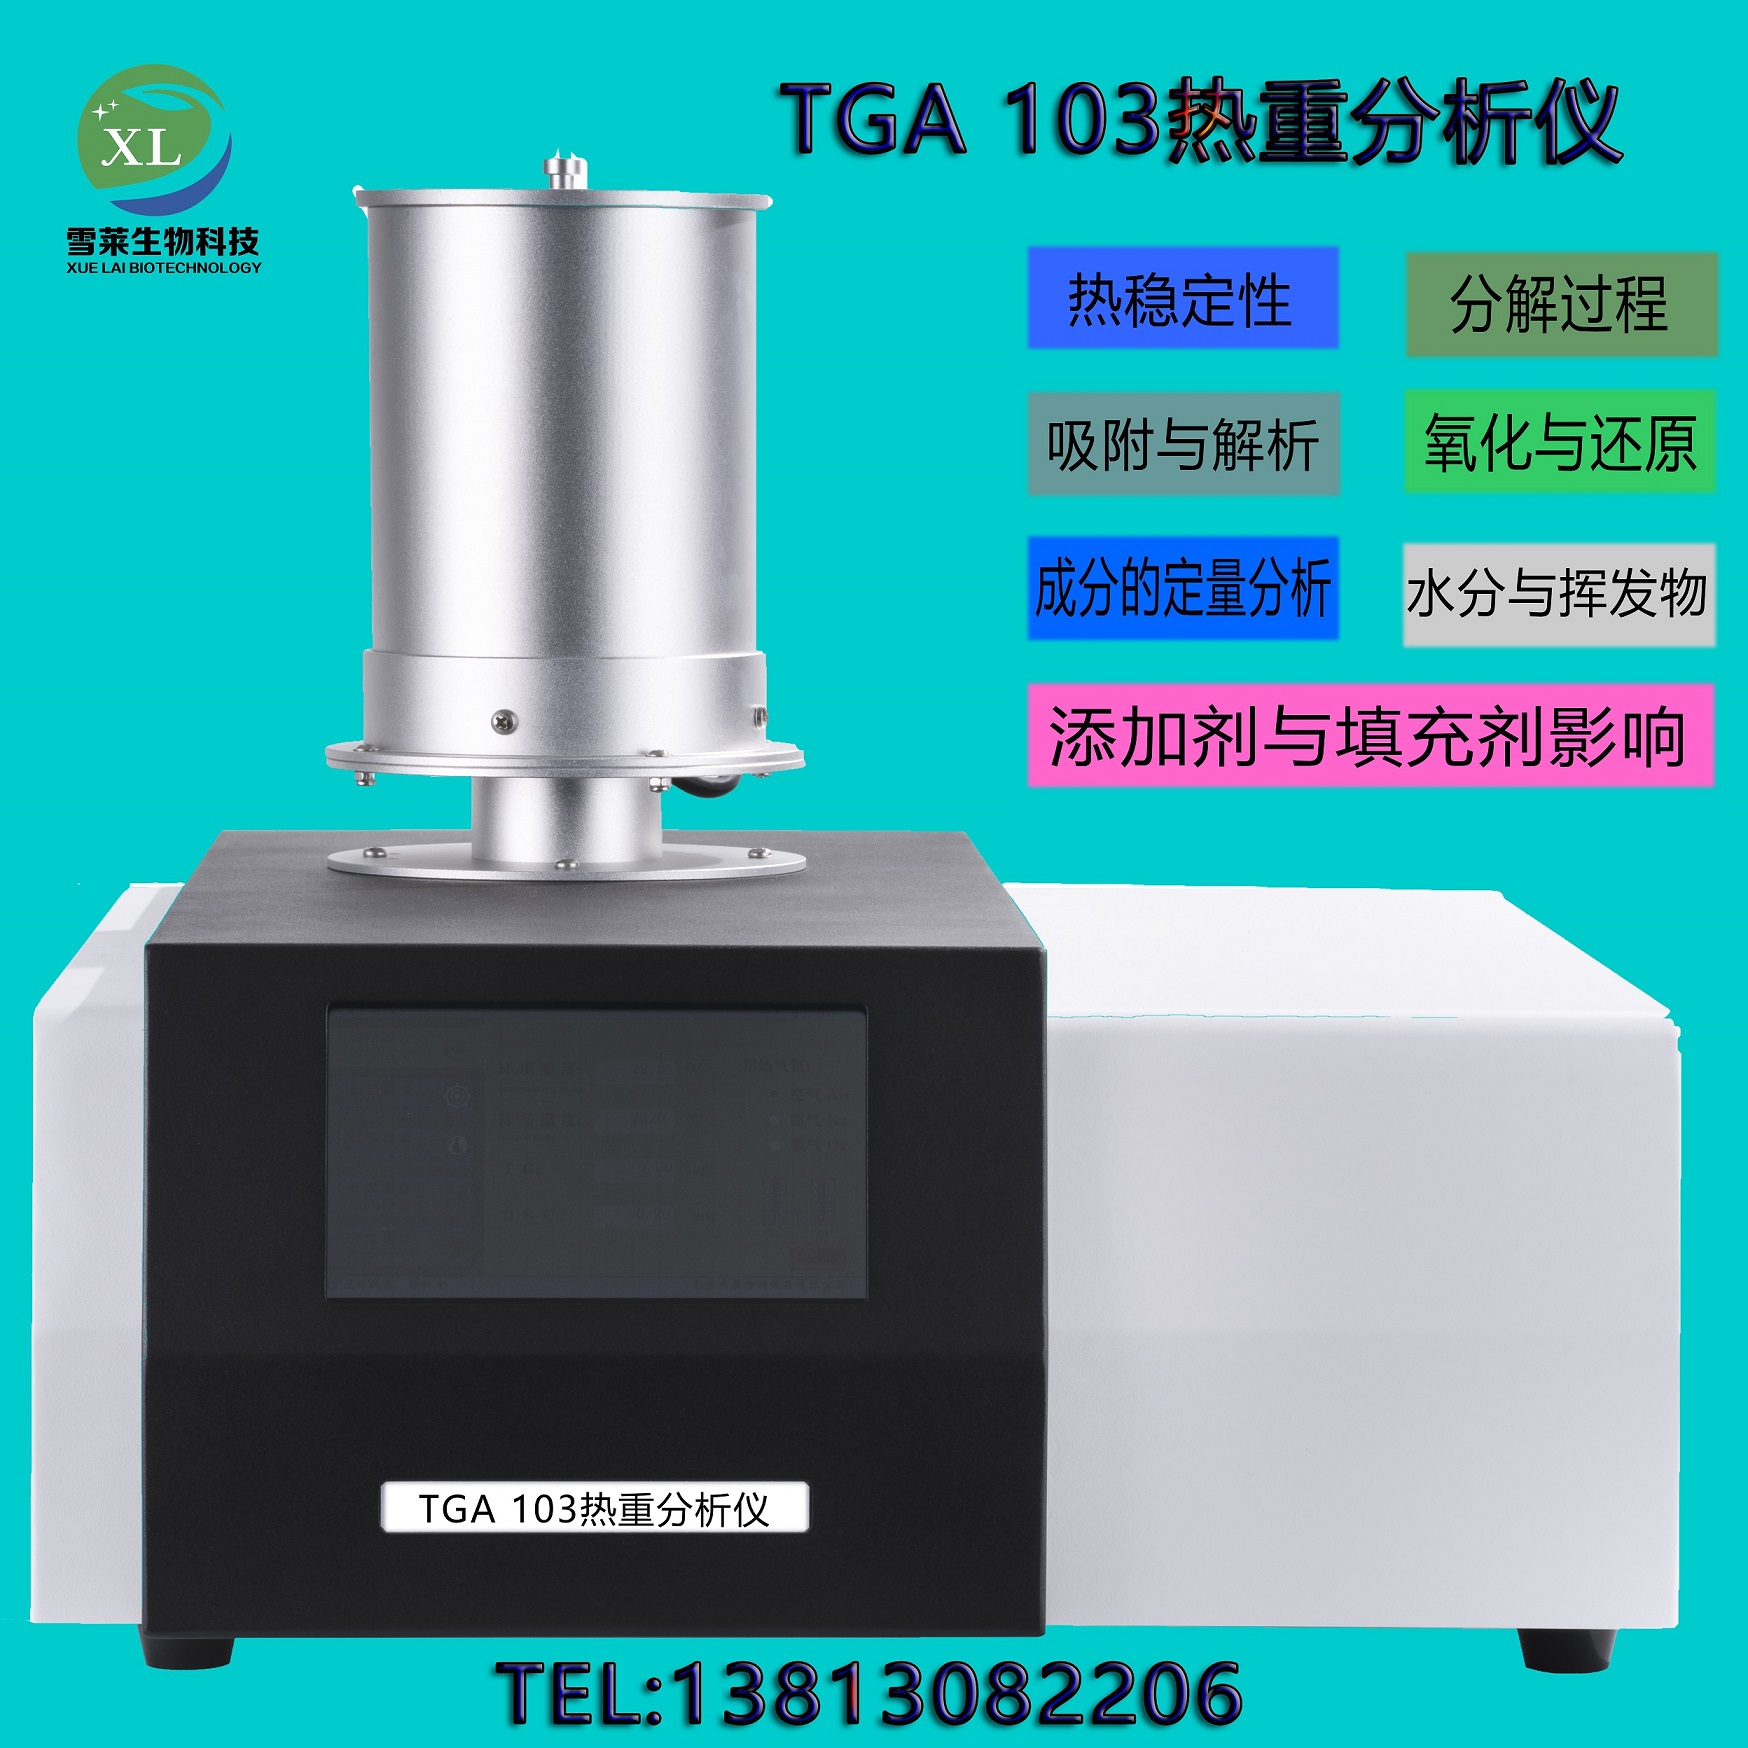 TGA 103 热重分析仪 南京雪莱生物科技有限公司(图1)